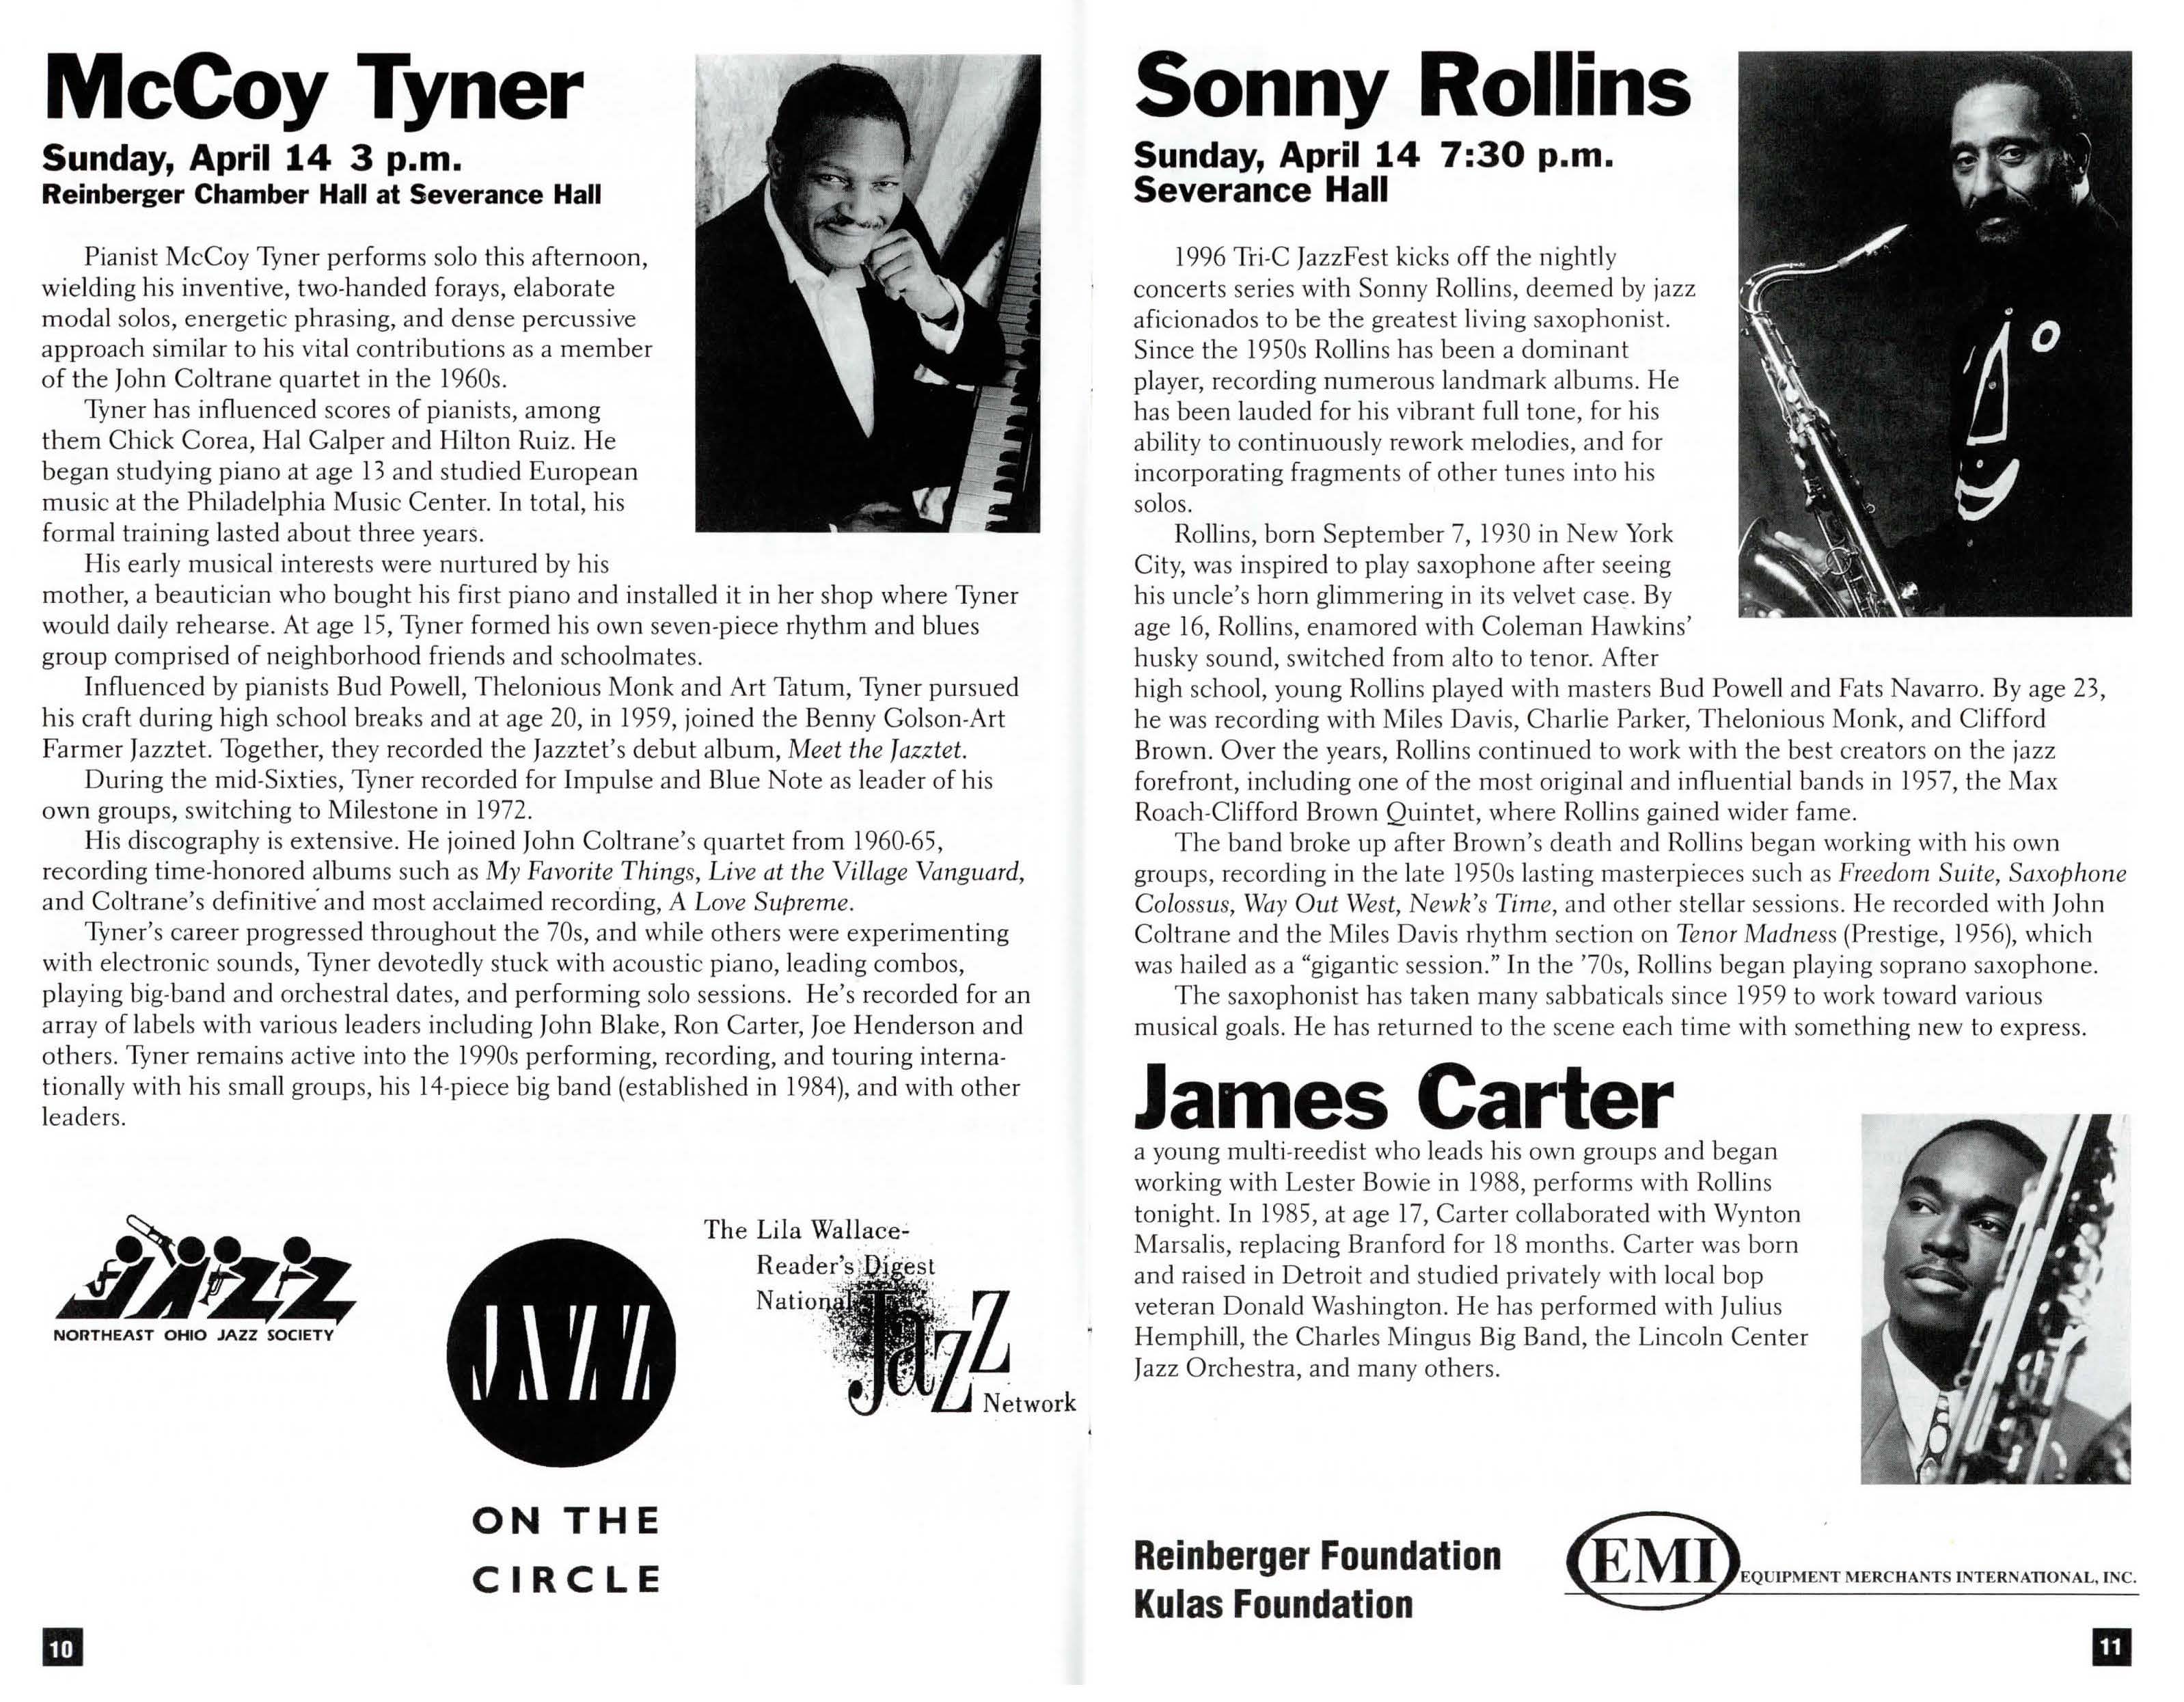 McCoy Tyner Program Bio